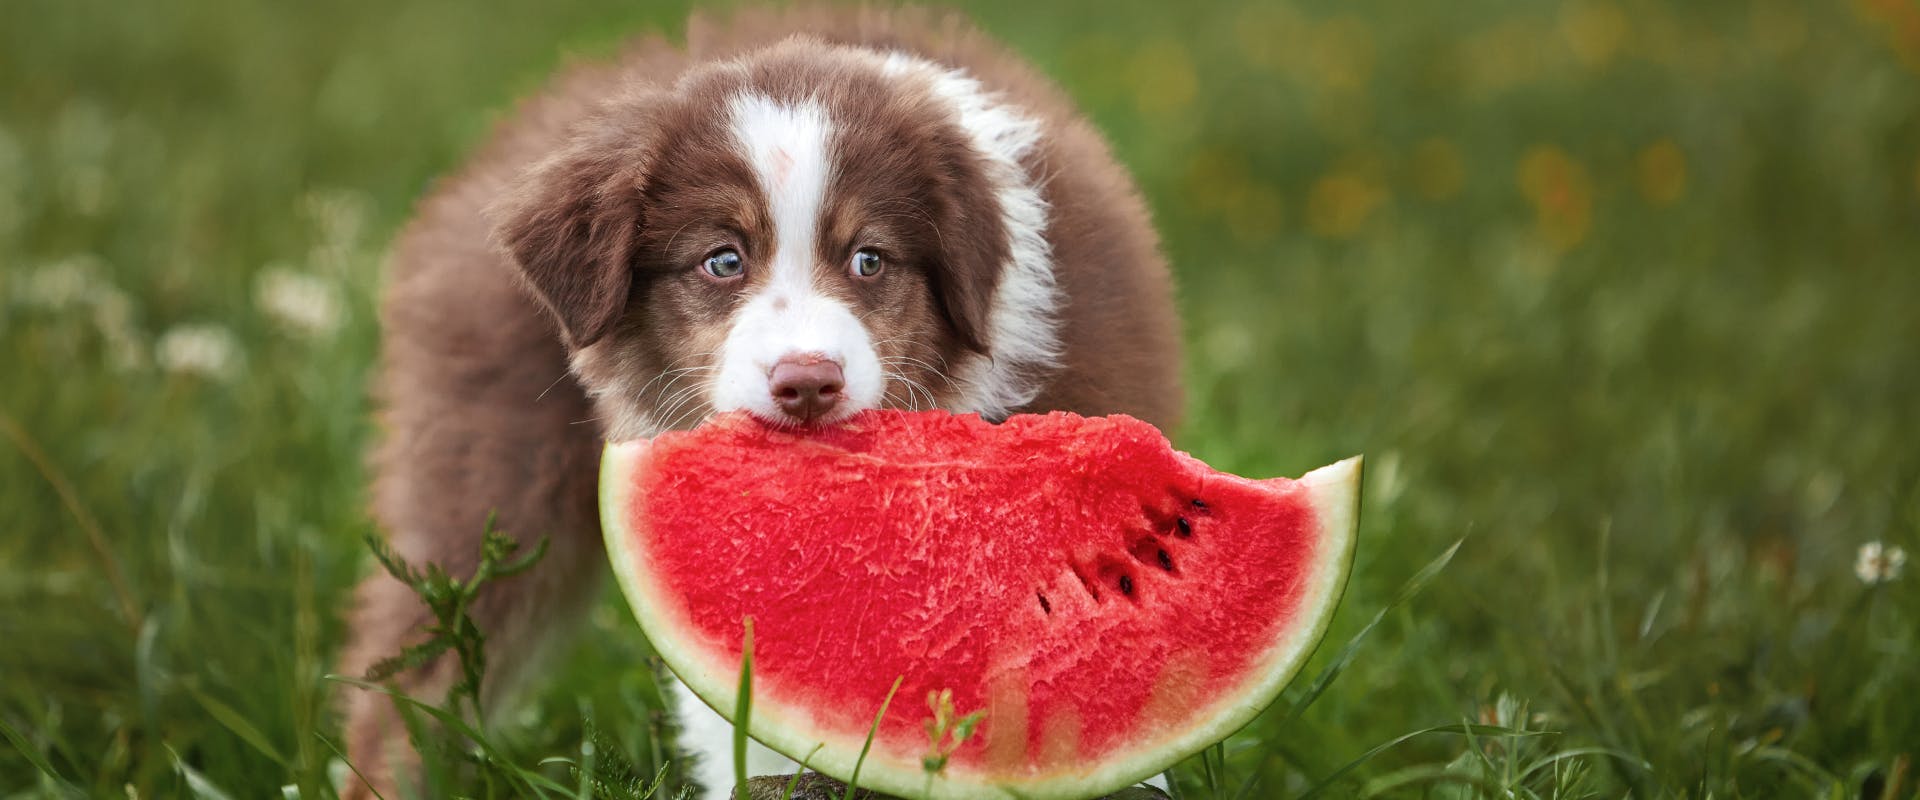 a australian shepherd puppy nibbling on a watermelon slice